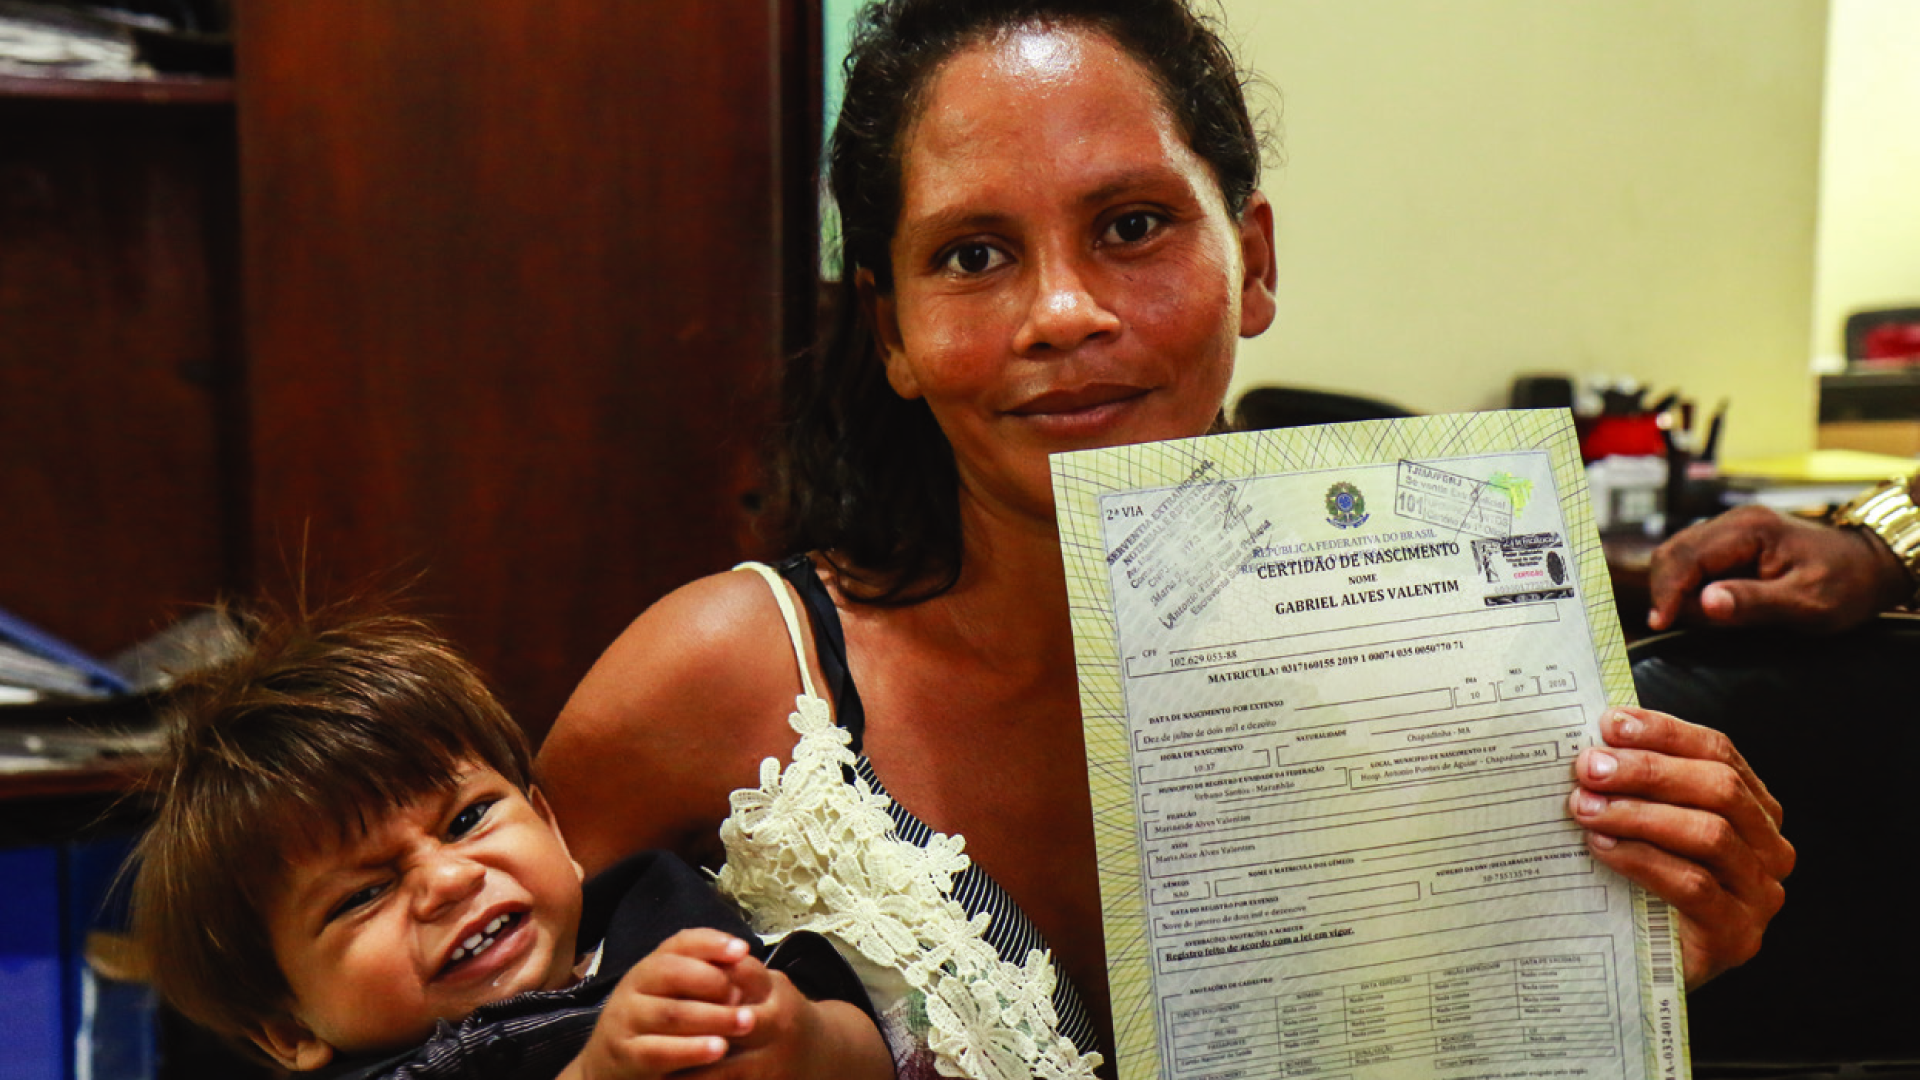 Gabriel, sua mãe e o registro civil de nascimento. Uma garantia de seus direitos como cidadão.